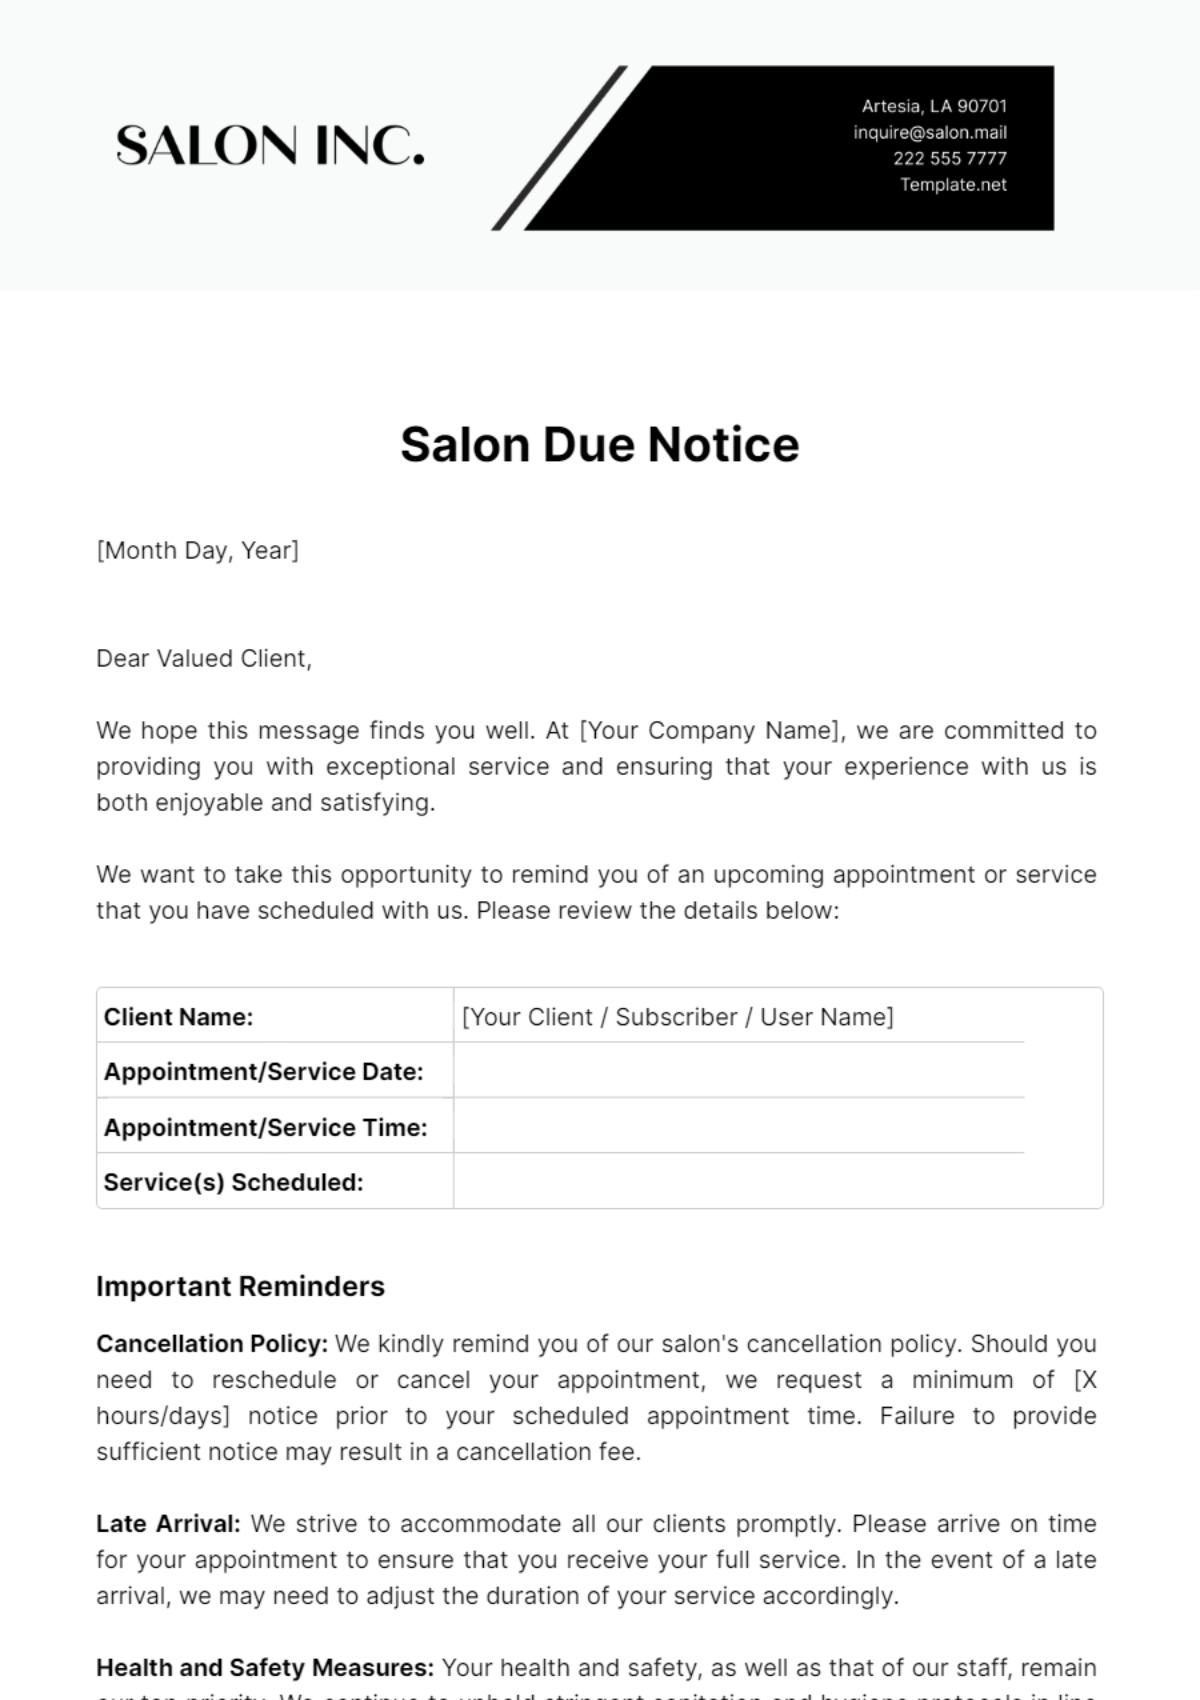 Salon Due Notice Template